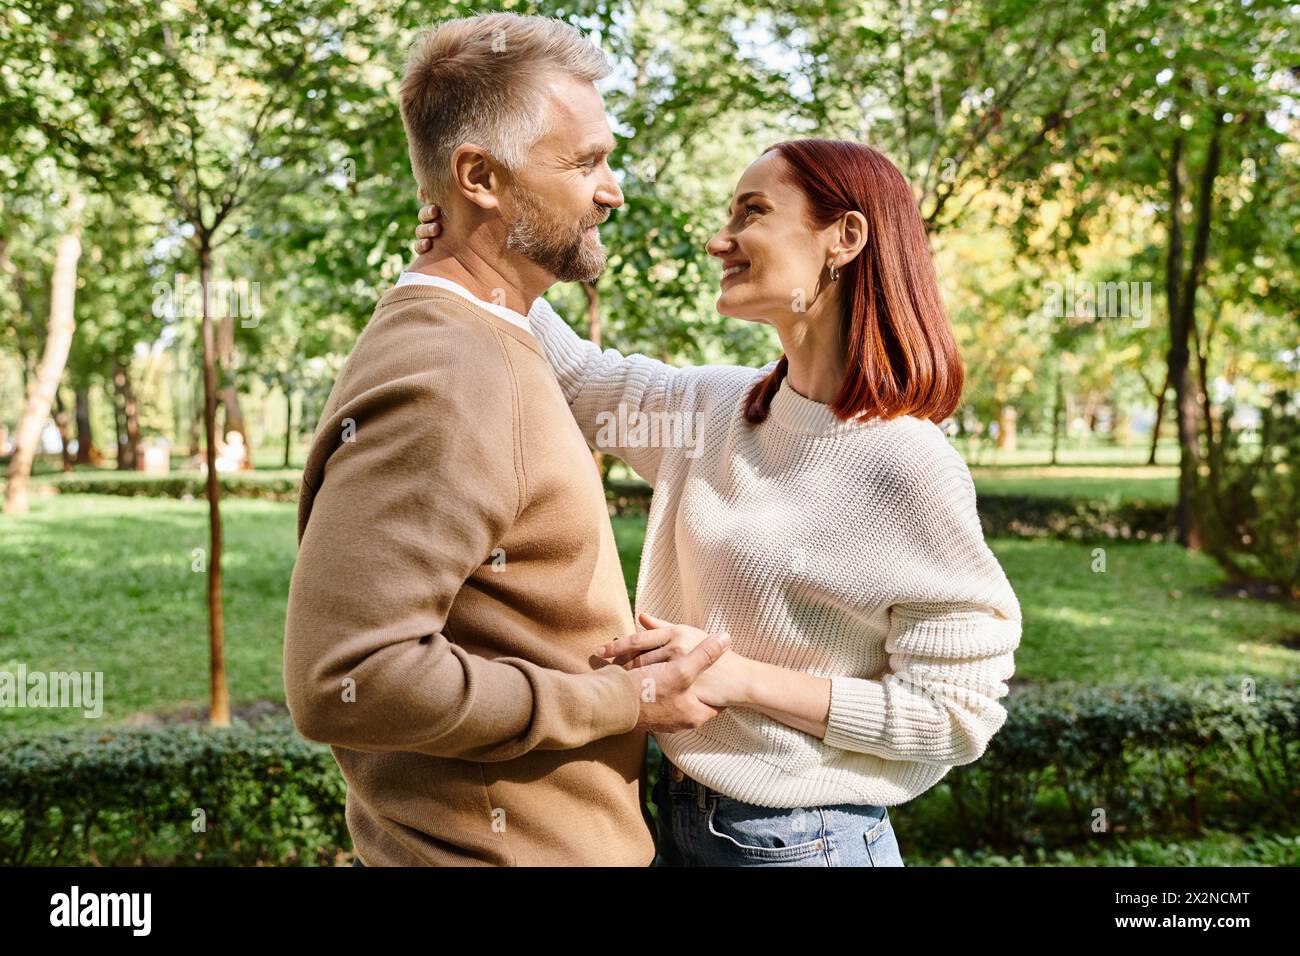 Ein Mann und eine Frau, ein liebevolles Paar, stehen zusammen in einem friedlichen Park. Stockfoto